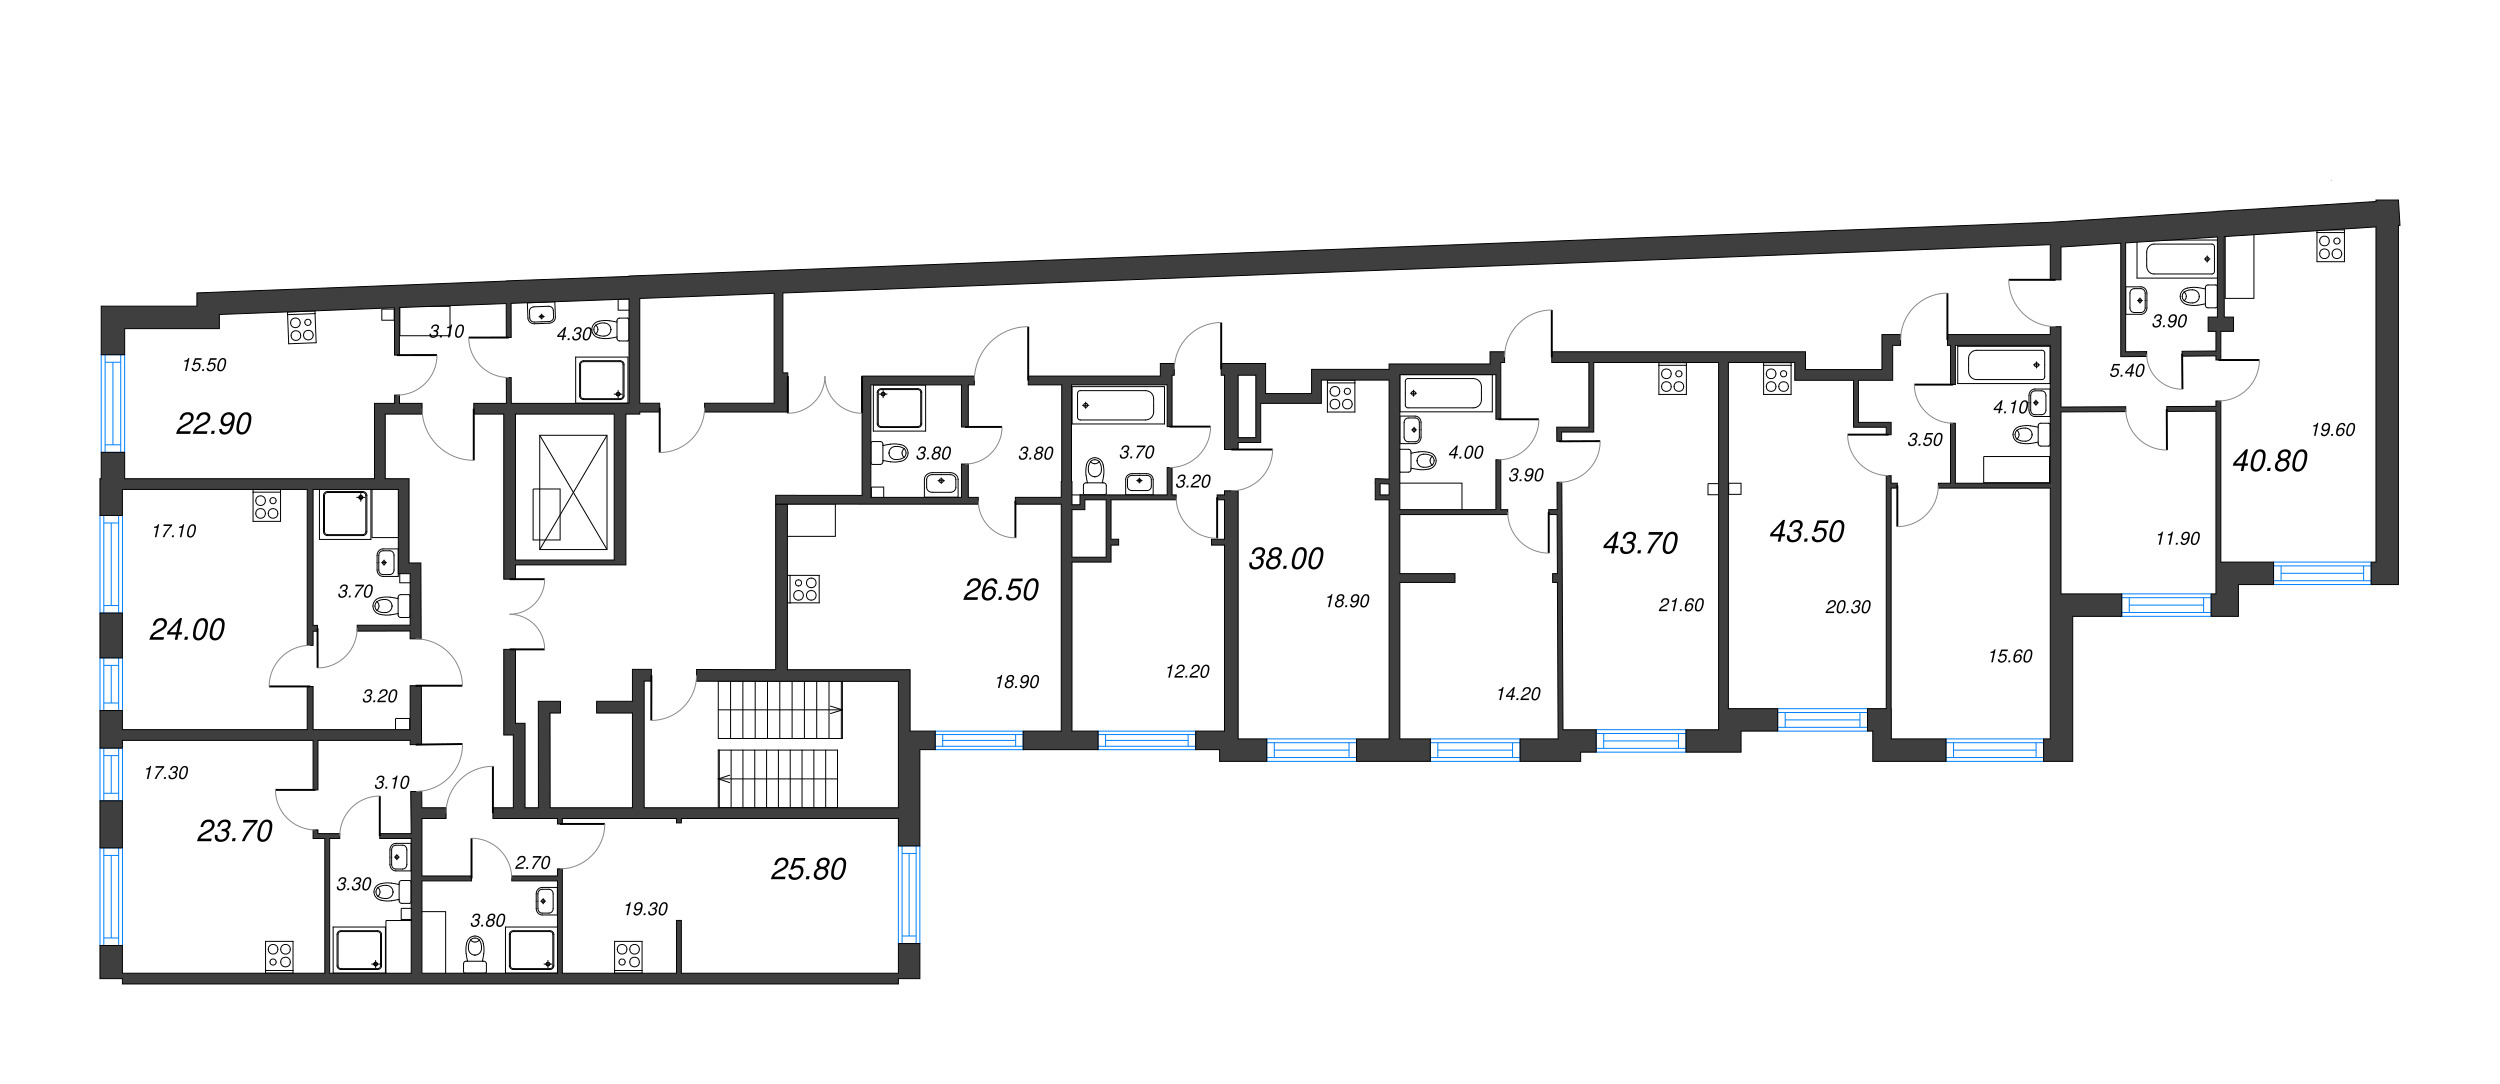 2-комнатная (Евро) квартира, 38 м² в ЖК "Измайловский" - планировка этажа